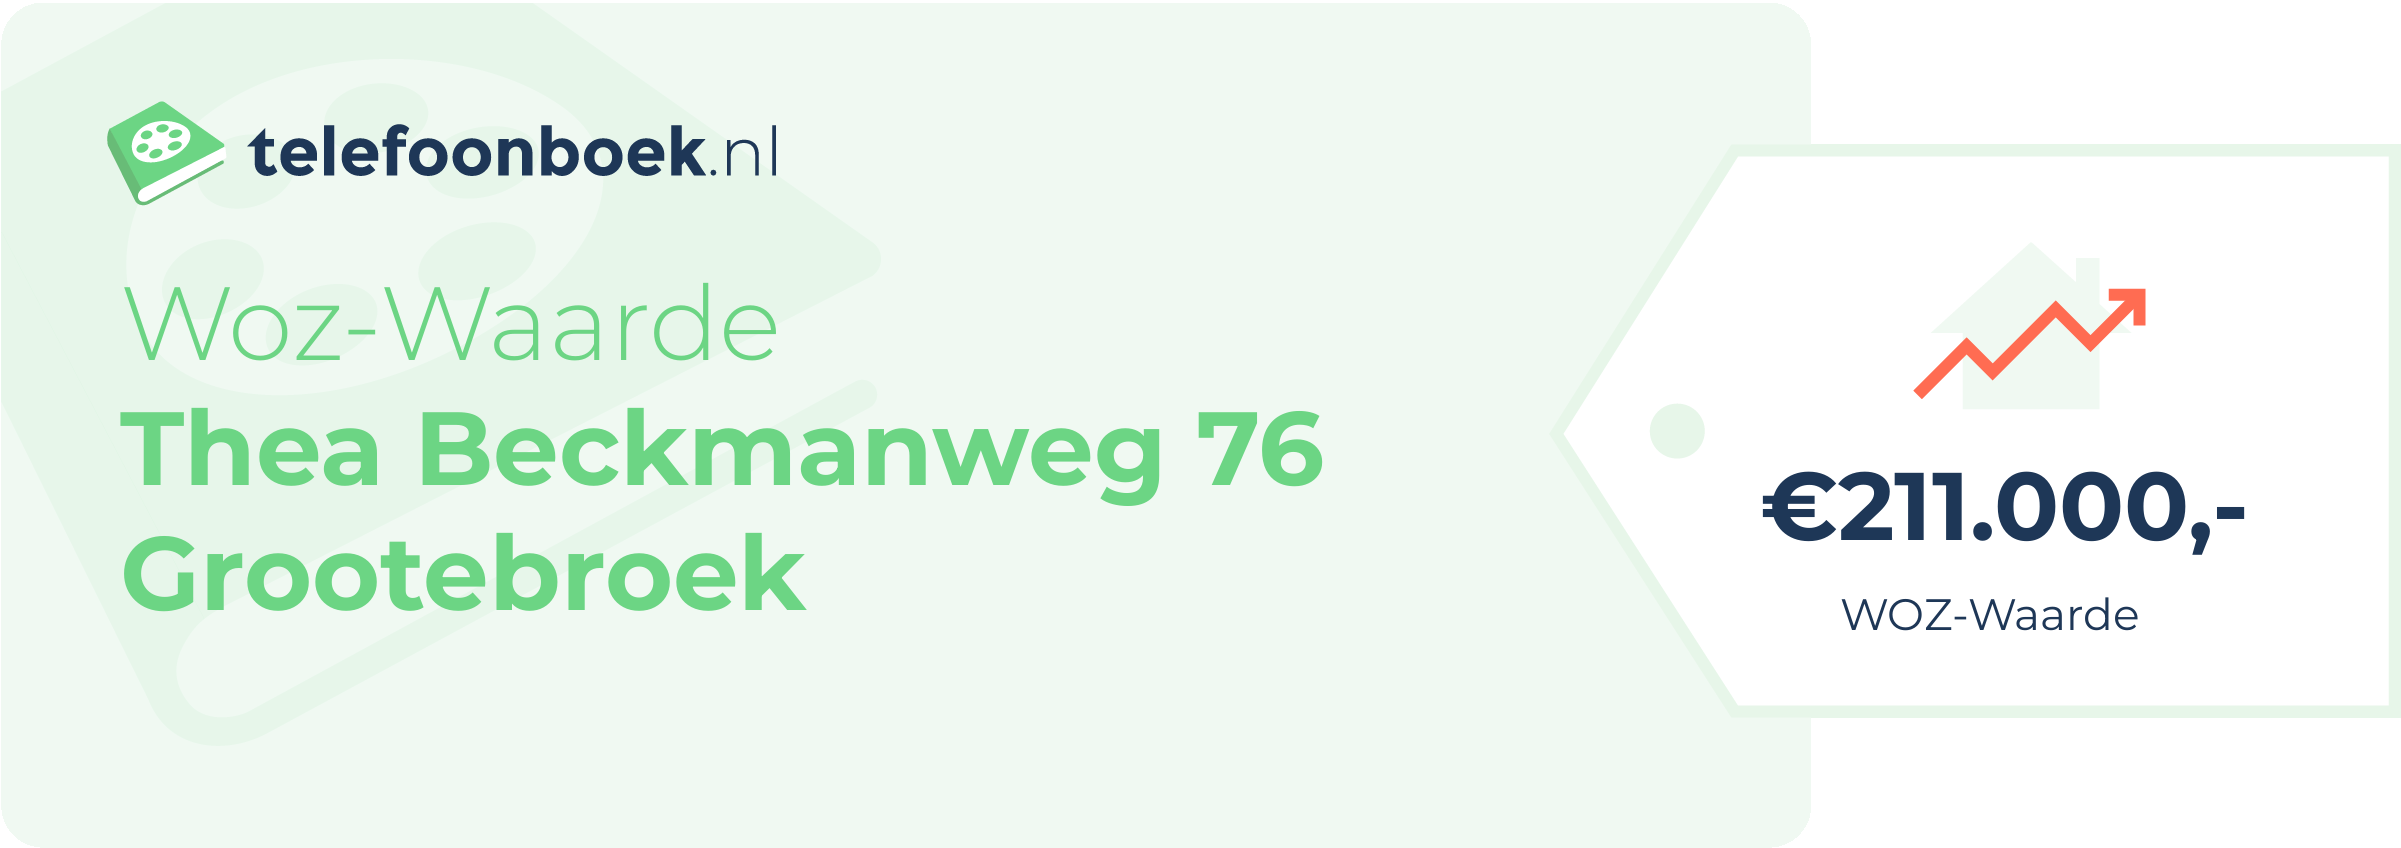 WOZ-waarde Thea Beckmanweg 76 Grootebroek